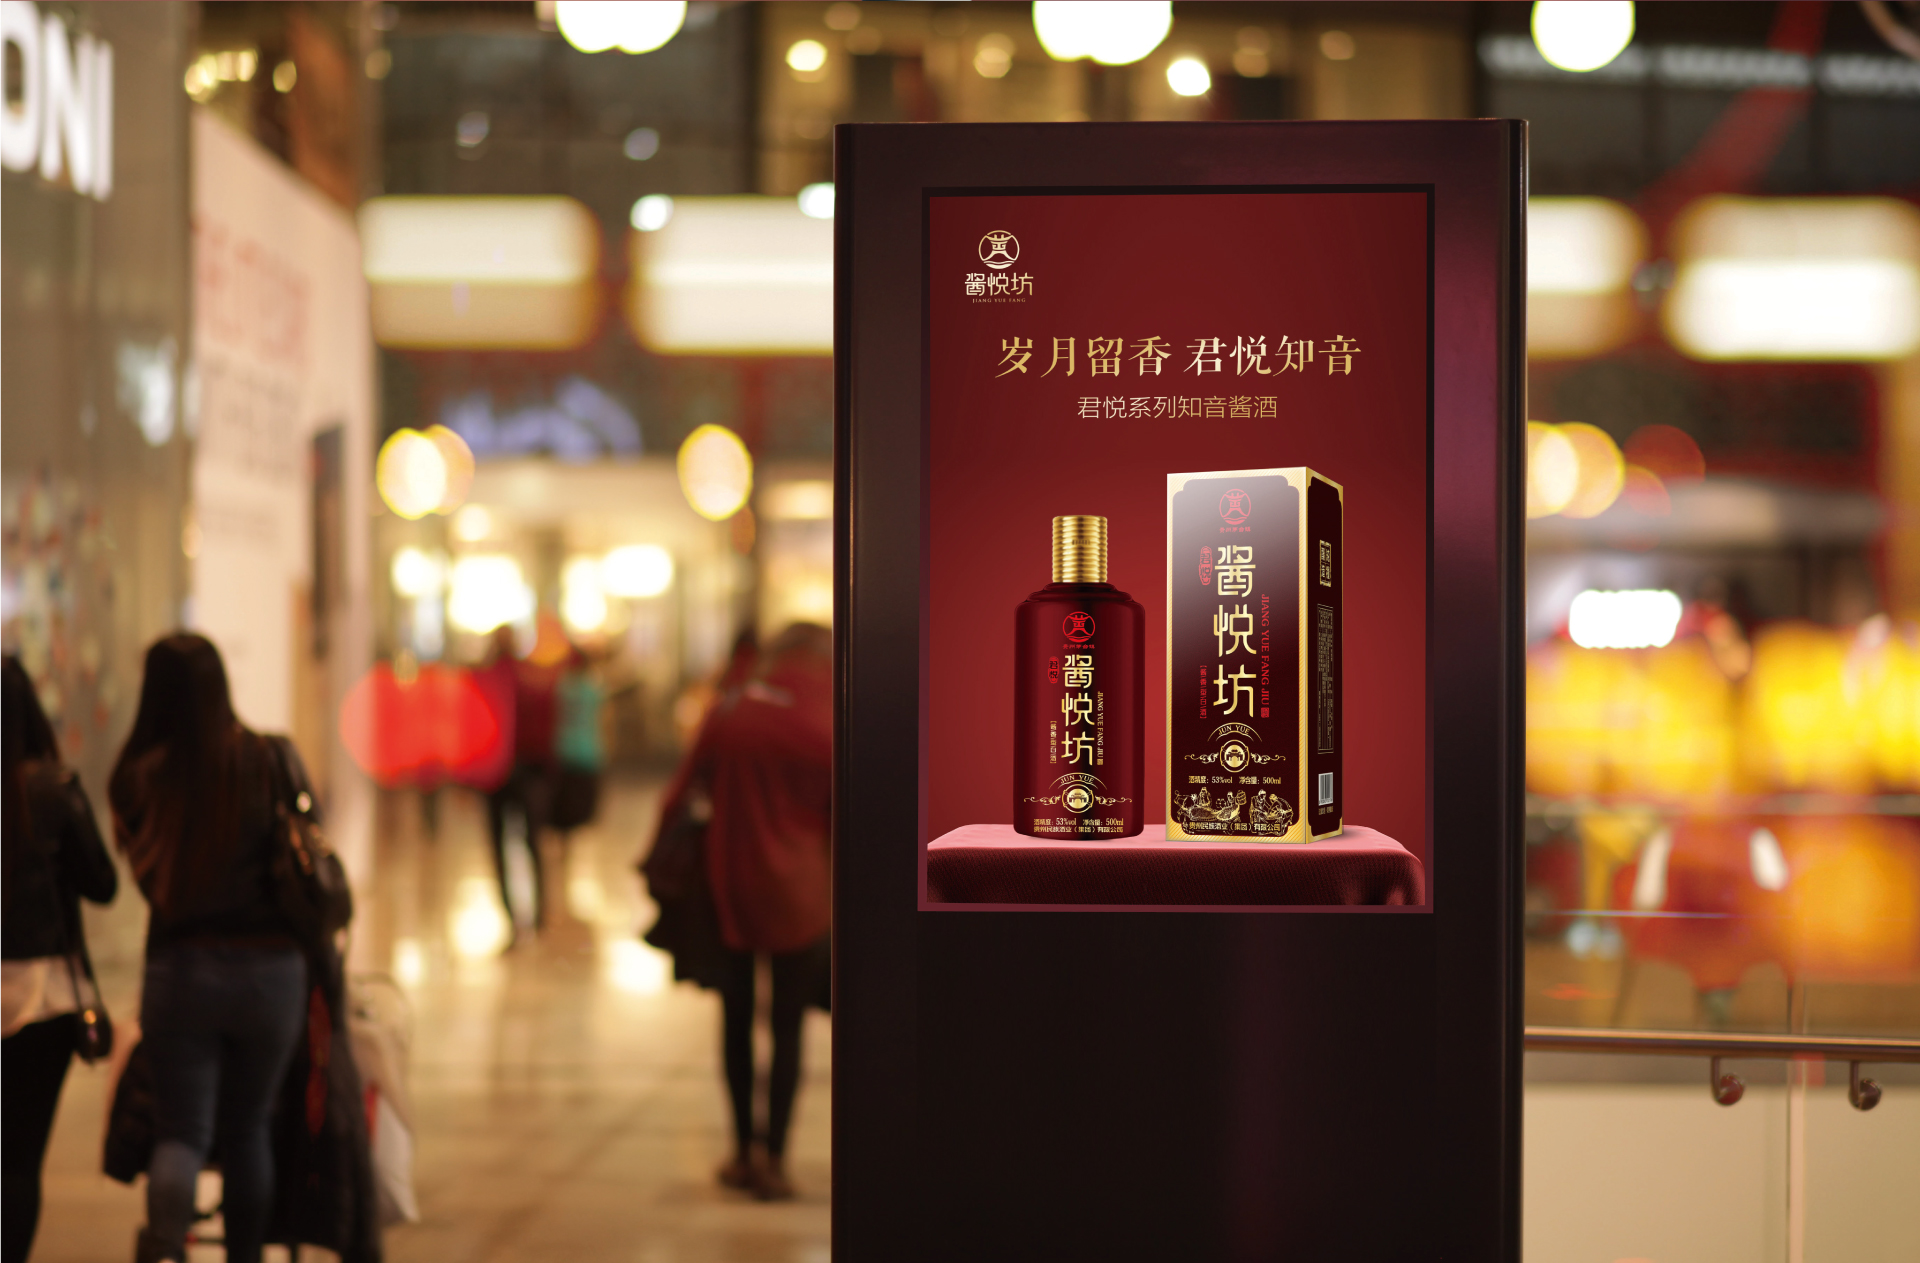 惠州酱悦坊酒商标定制品牌全案策划案例分享